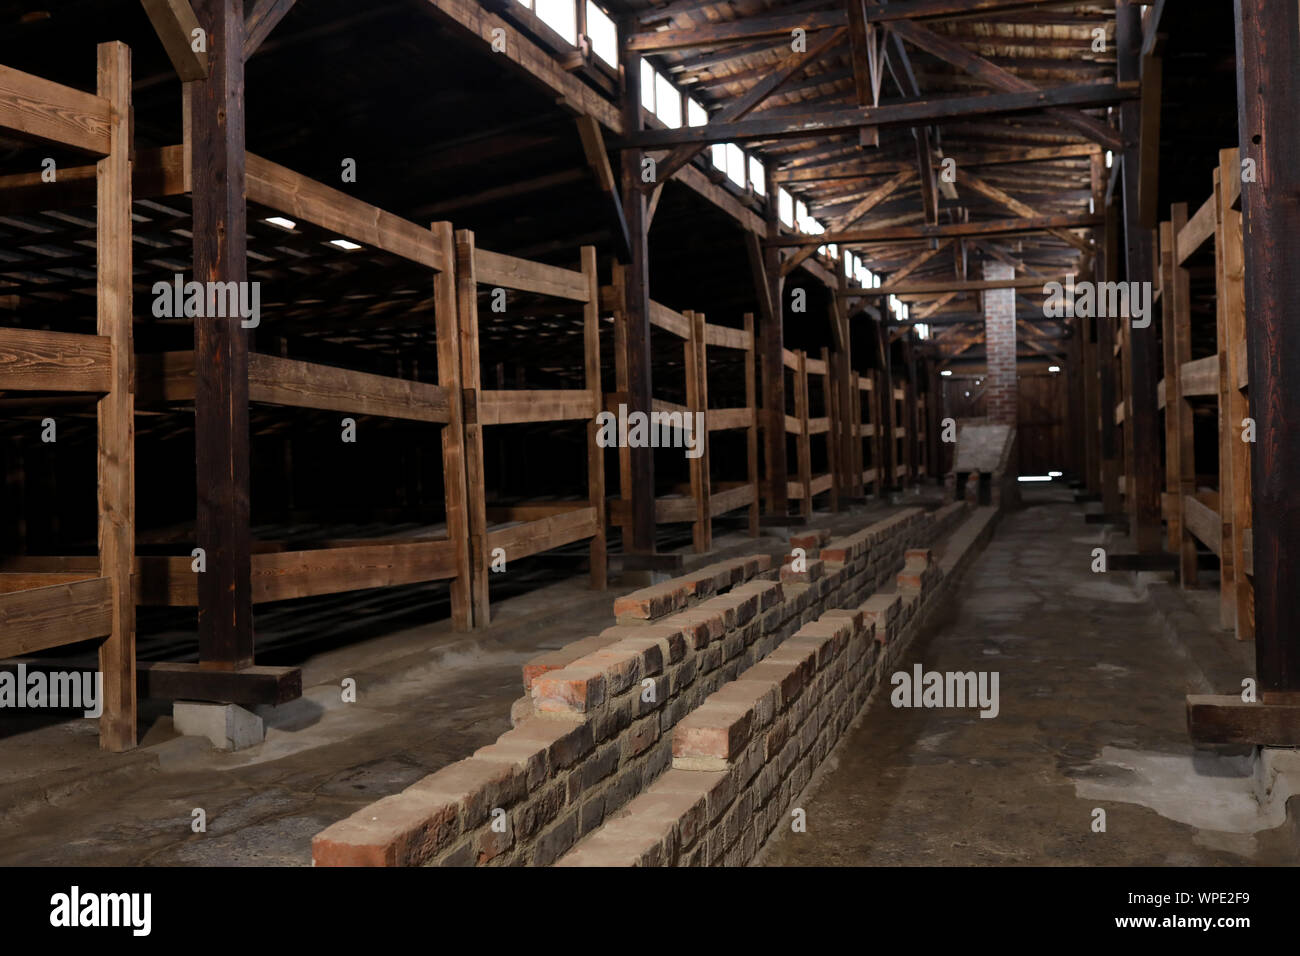 Auschwitz Birkenau, Polen vom 27. Januar 2019: Teil des KZ Auschwitz Holocaust Memorial Museum, Baracke innere Arbeit macht frei, winter Stockfoto